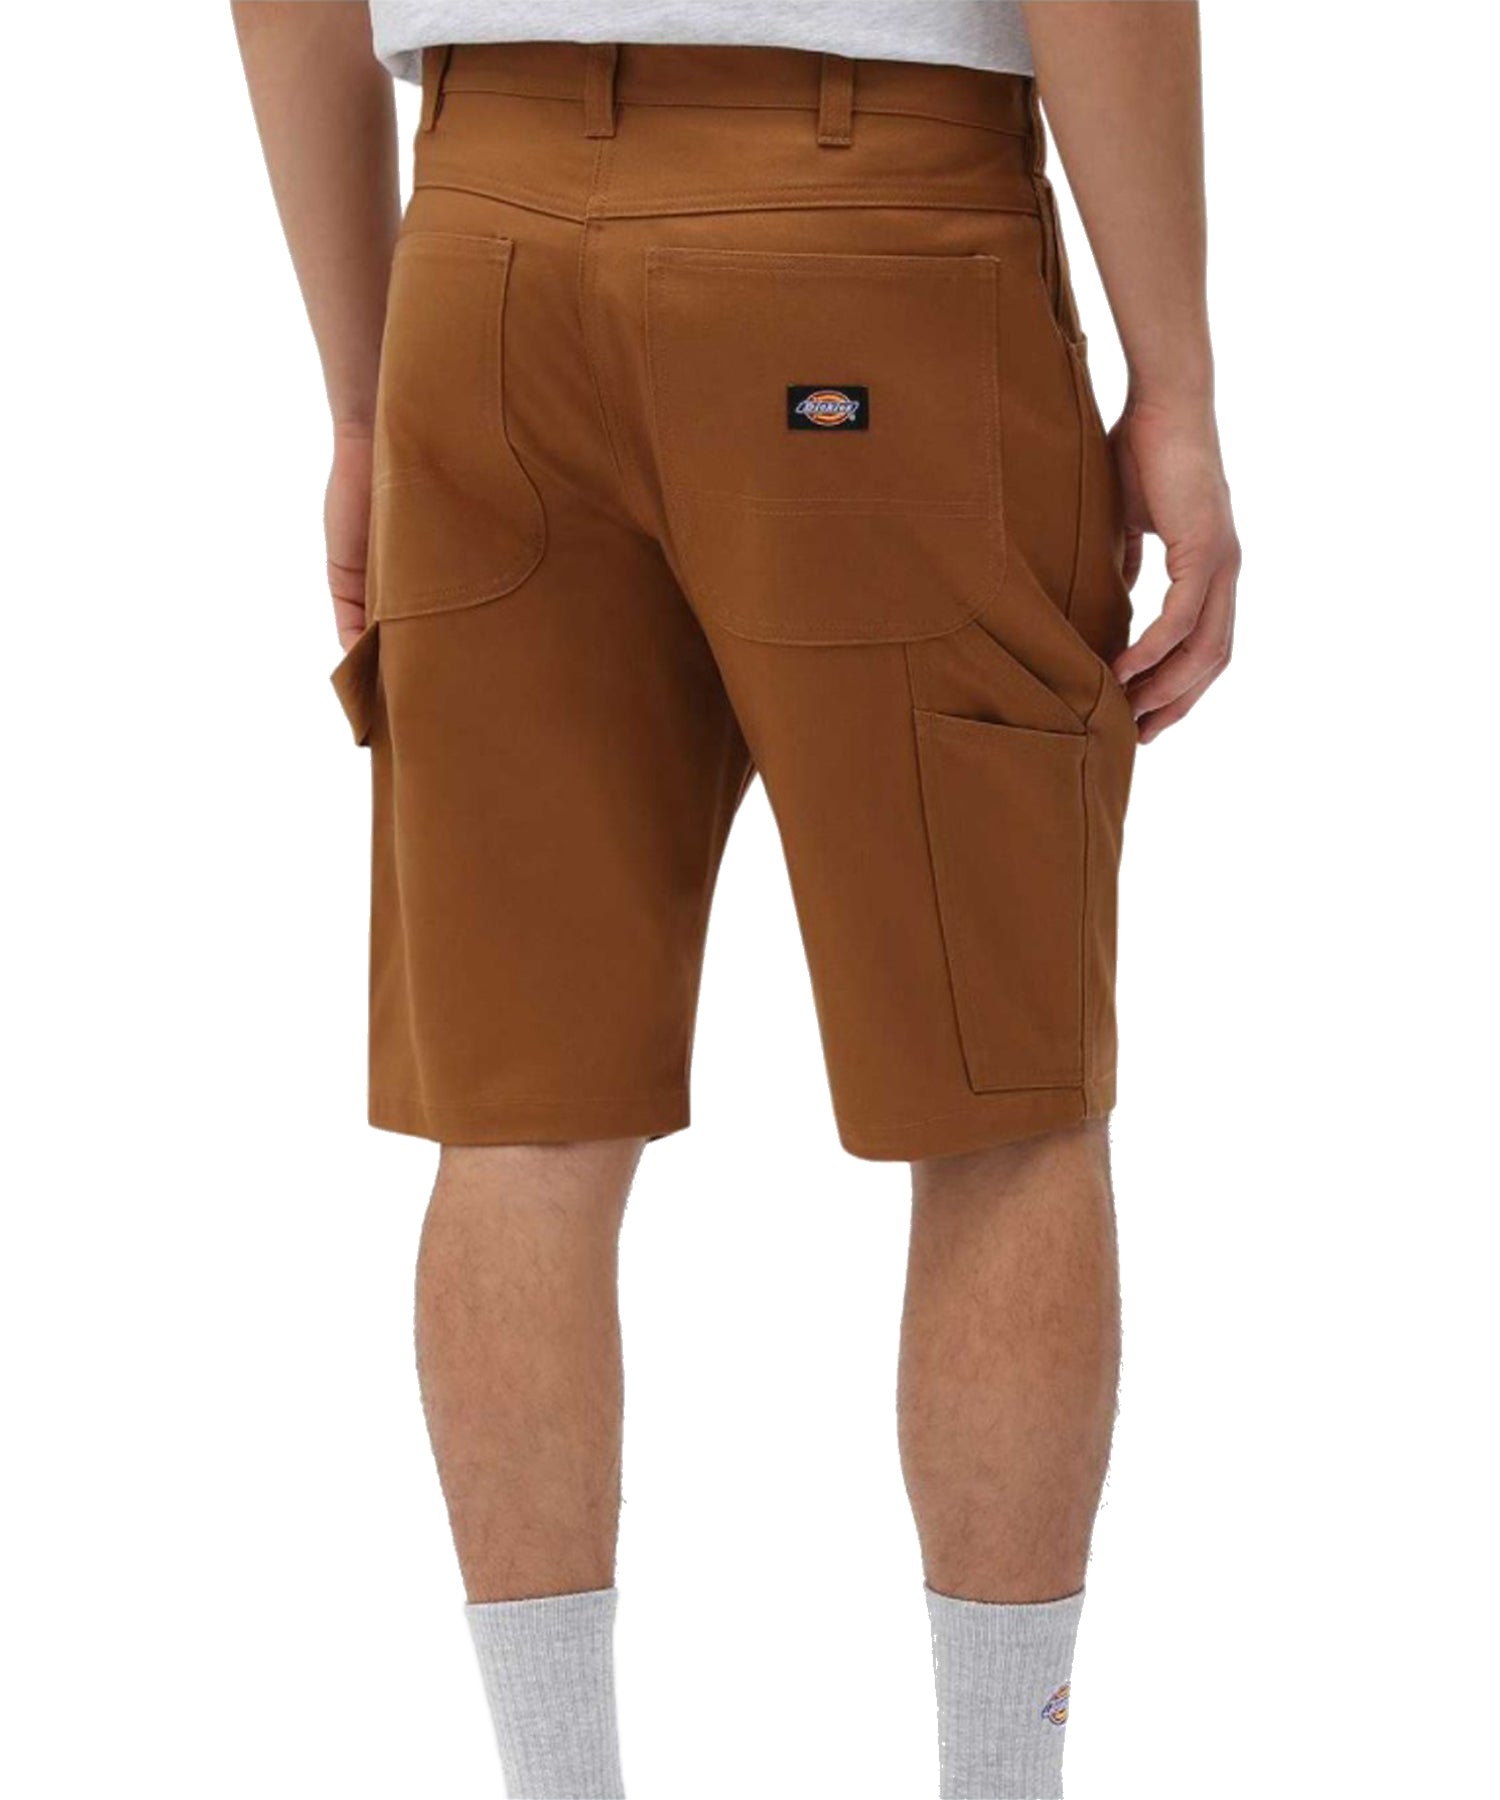 dickies-faiardale-pantalón corto tipo bermuda-color marrón con 5 bolsillos-algodón 100 por 100.